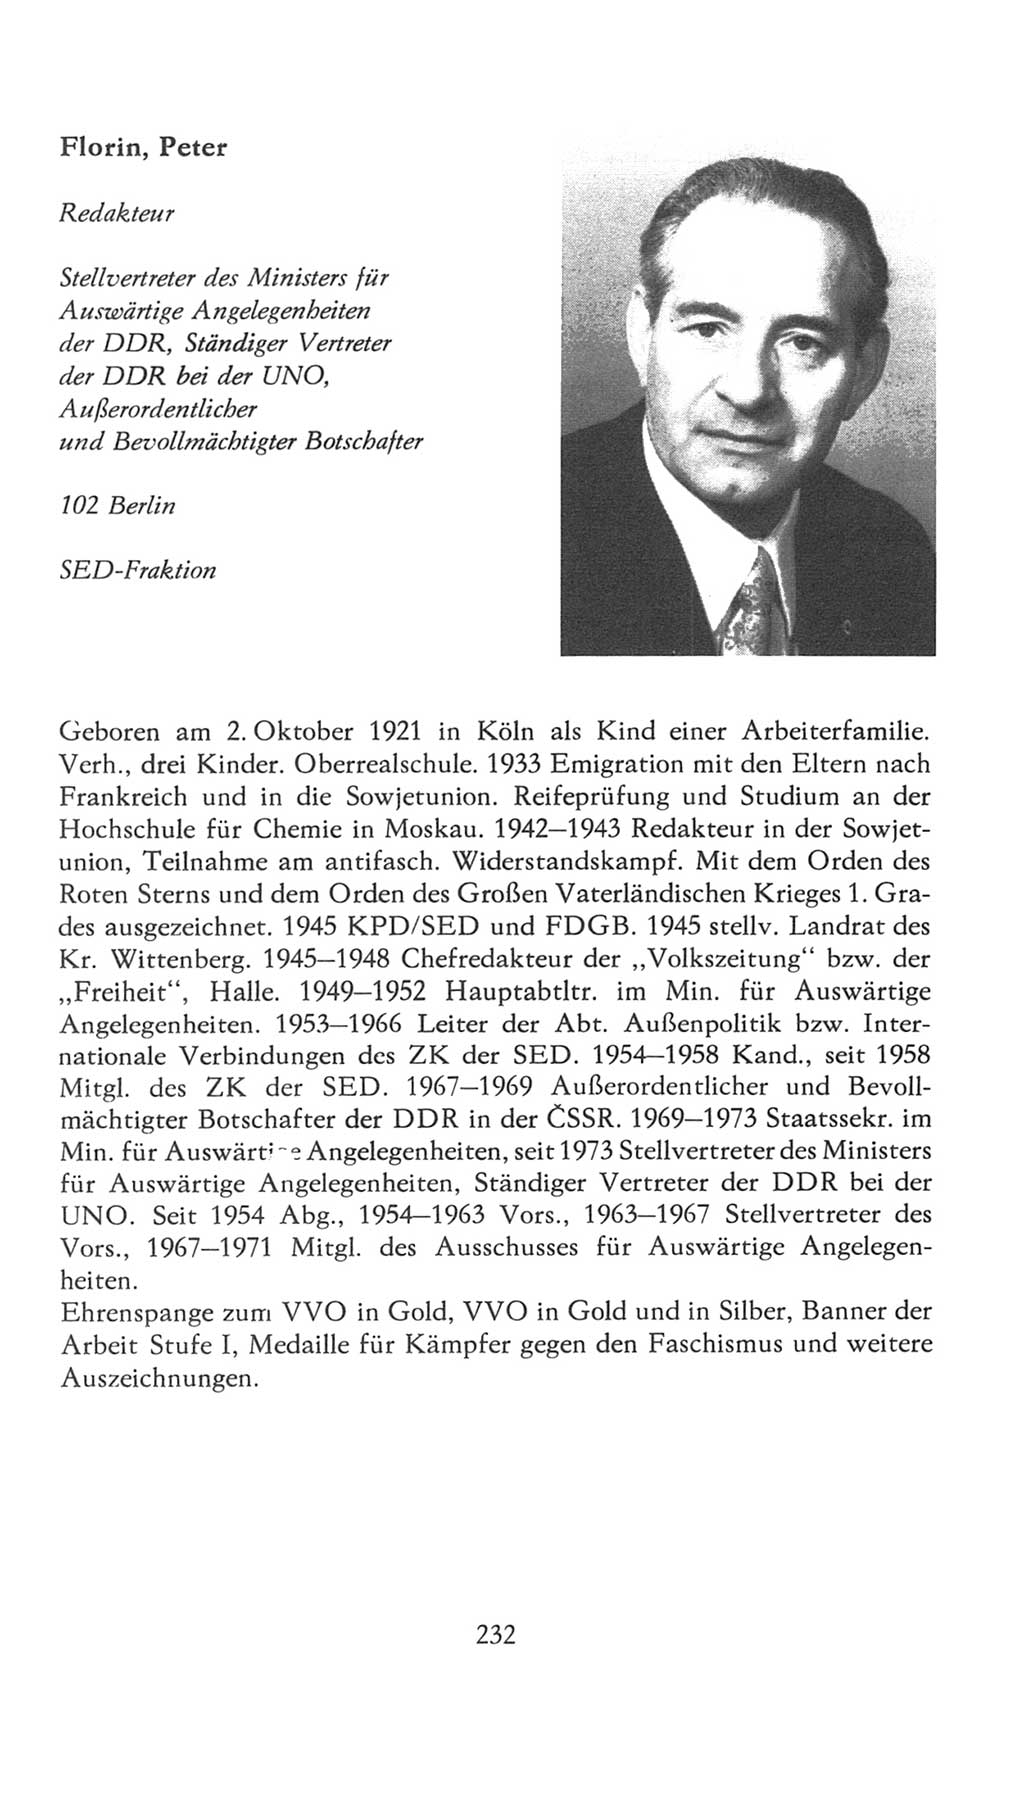 Volkskammer (VK) der Deutschen Demokratischen Republik (DDR), 7. Wahlperiode 1976-1981, Seite 232 (VK. DDR 7. WP. 1976-1981, S. 232)